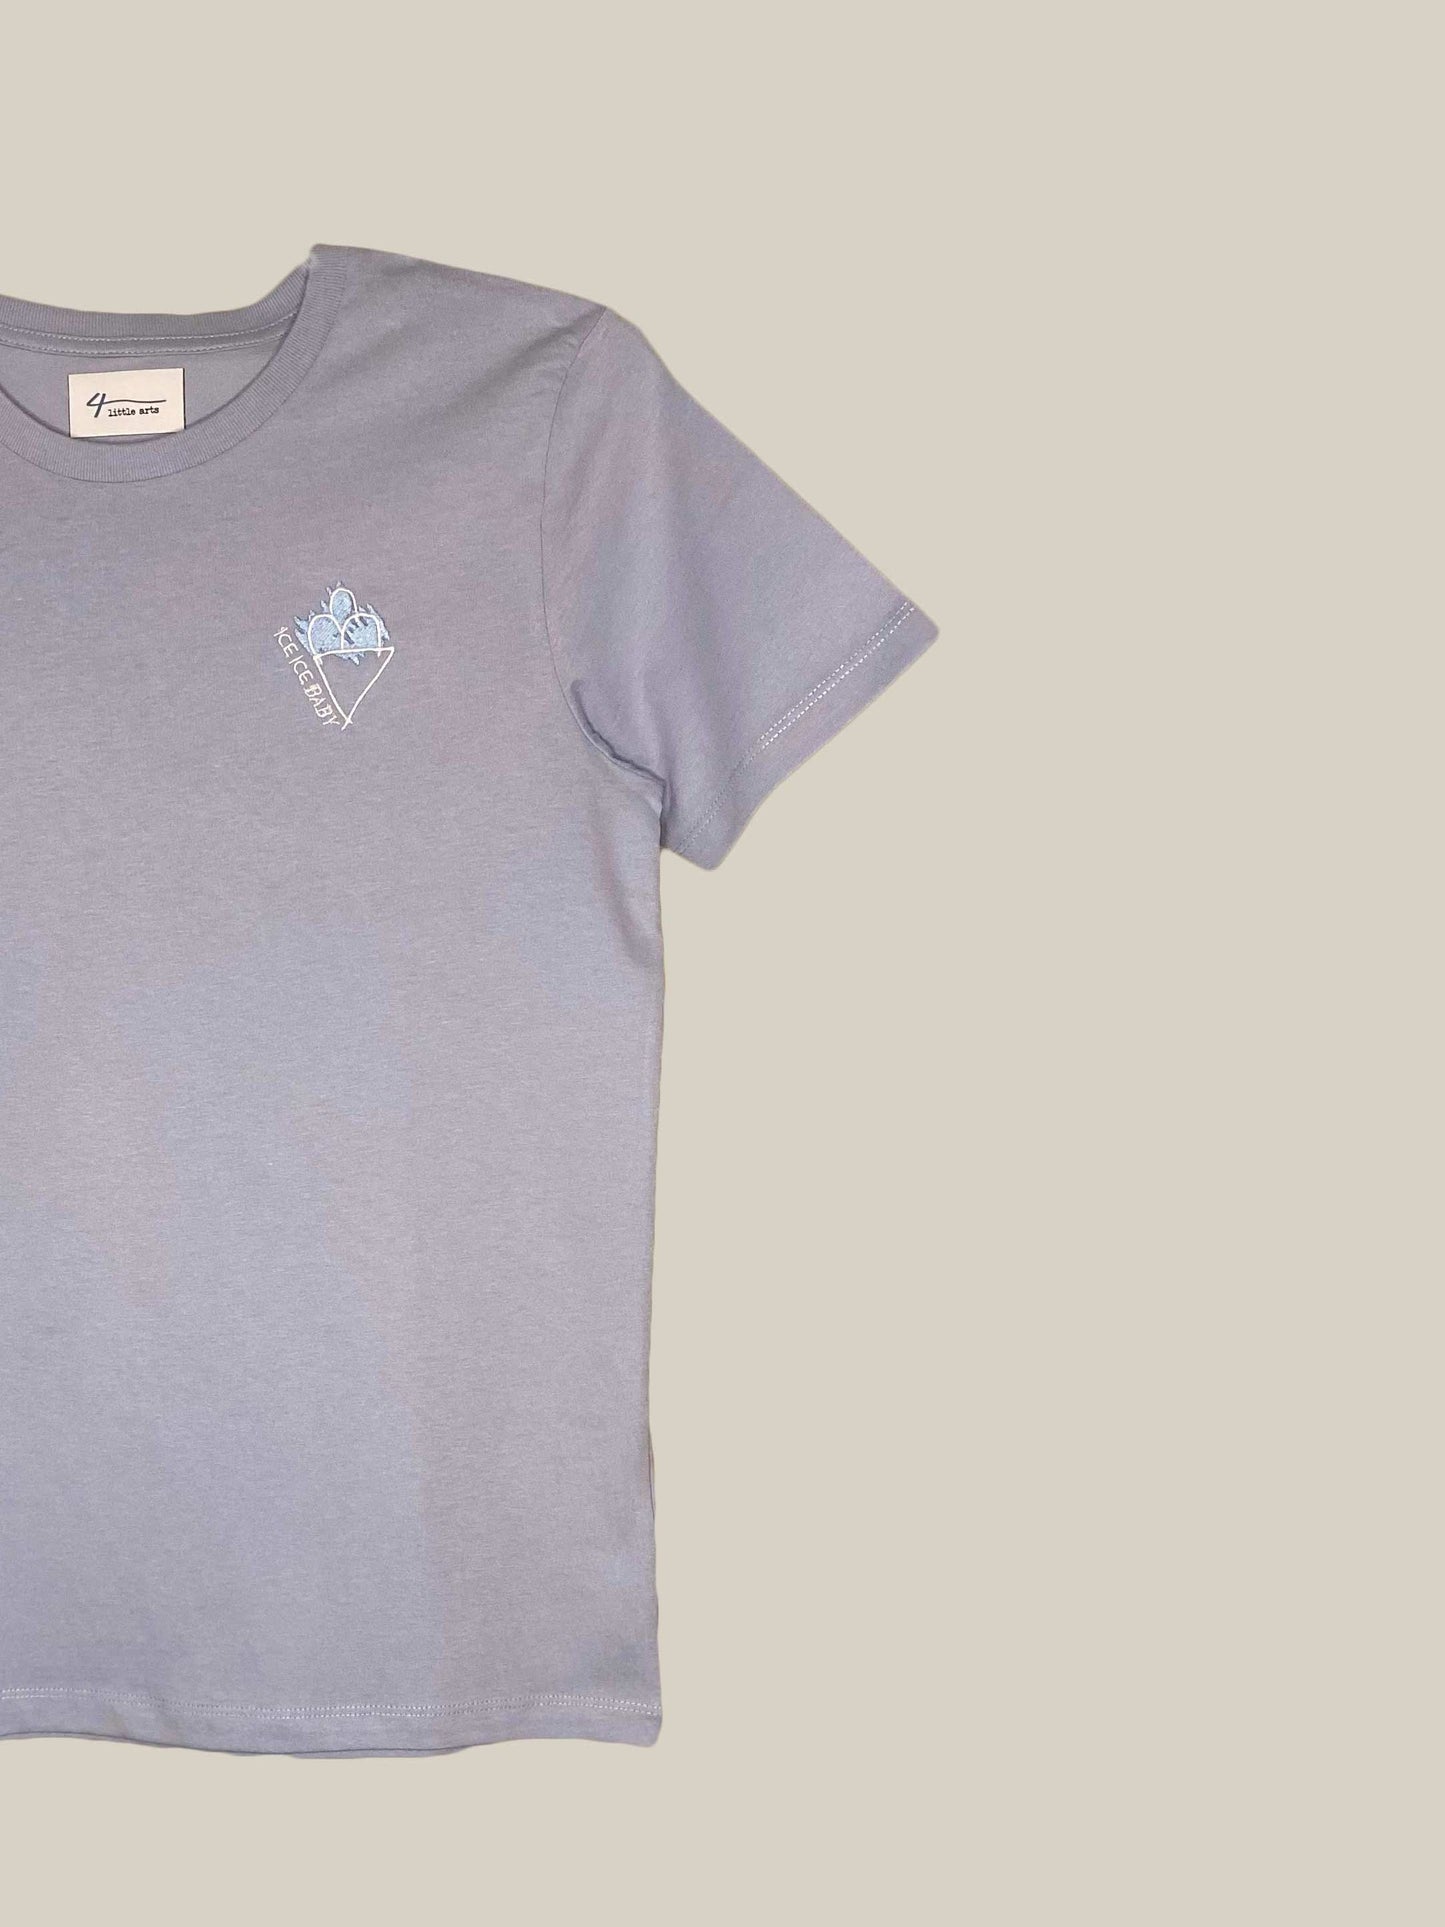 4littlearts T-Shirt 'ice ice baby' für Kids aus Biobaumwolle, Detailansicht, nachhaltige Mode 